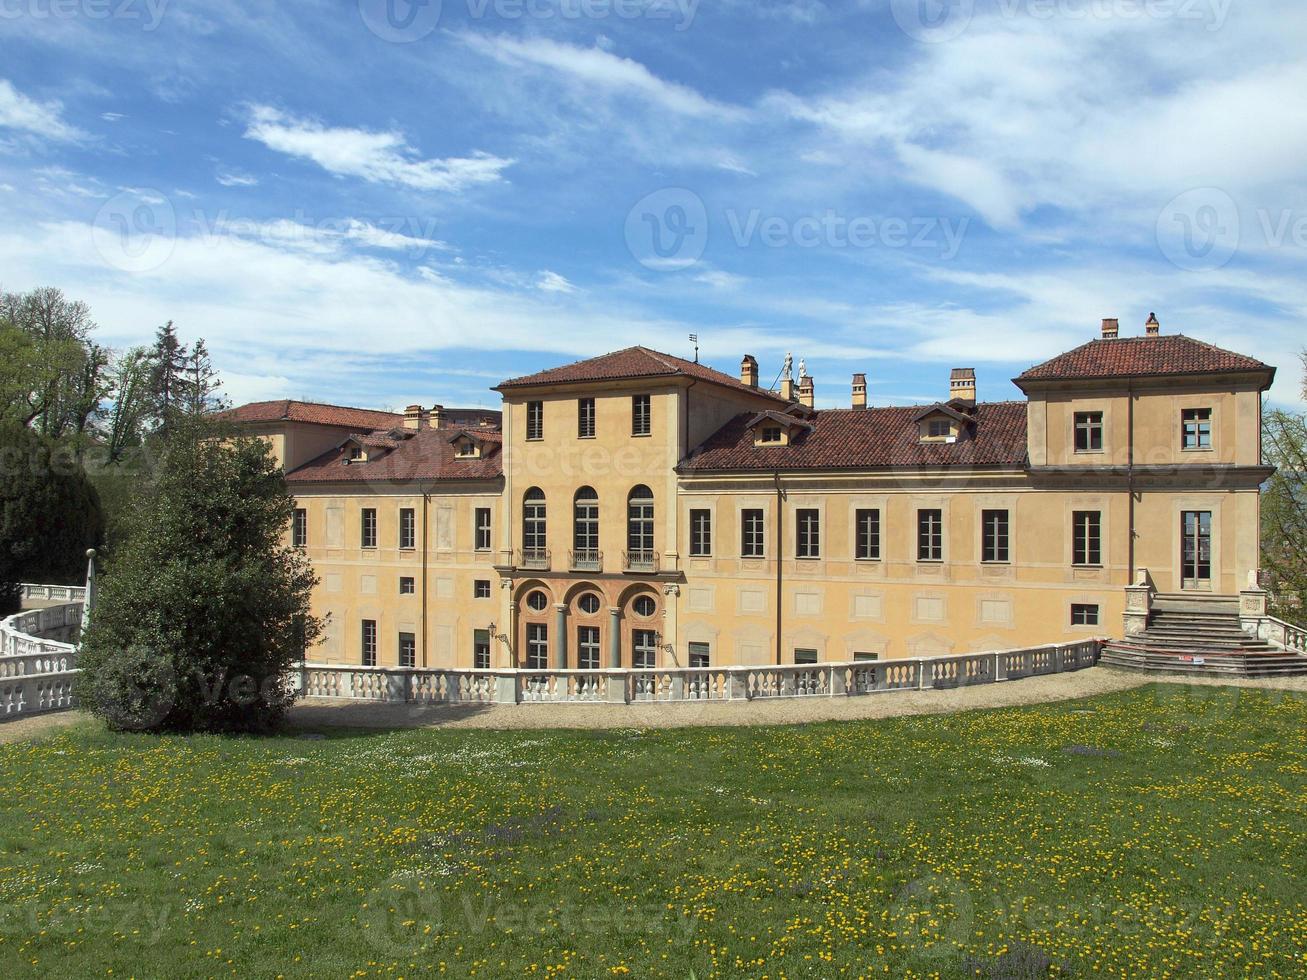 Villa della Regina, Turin foto